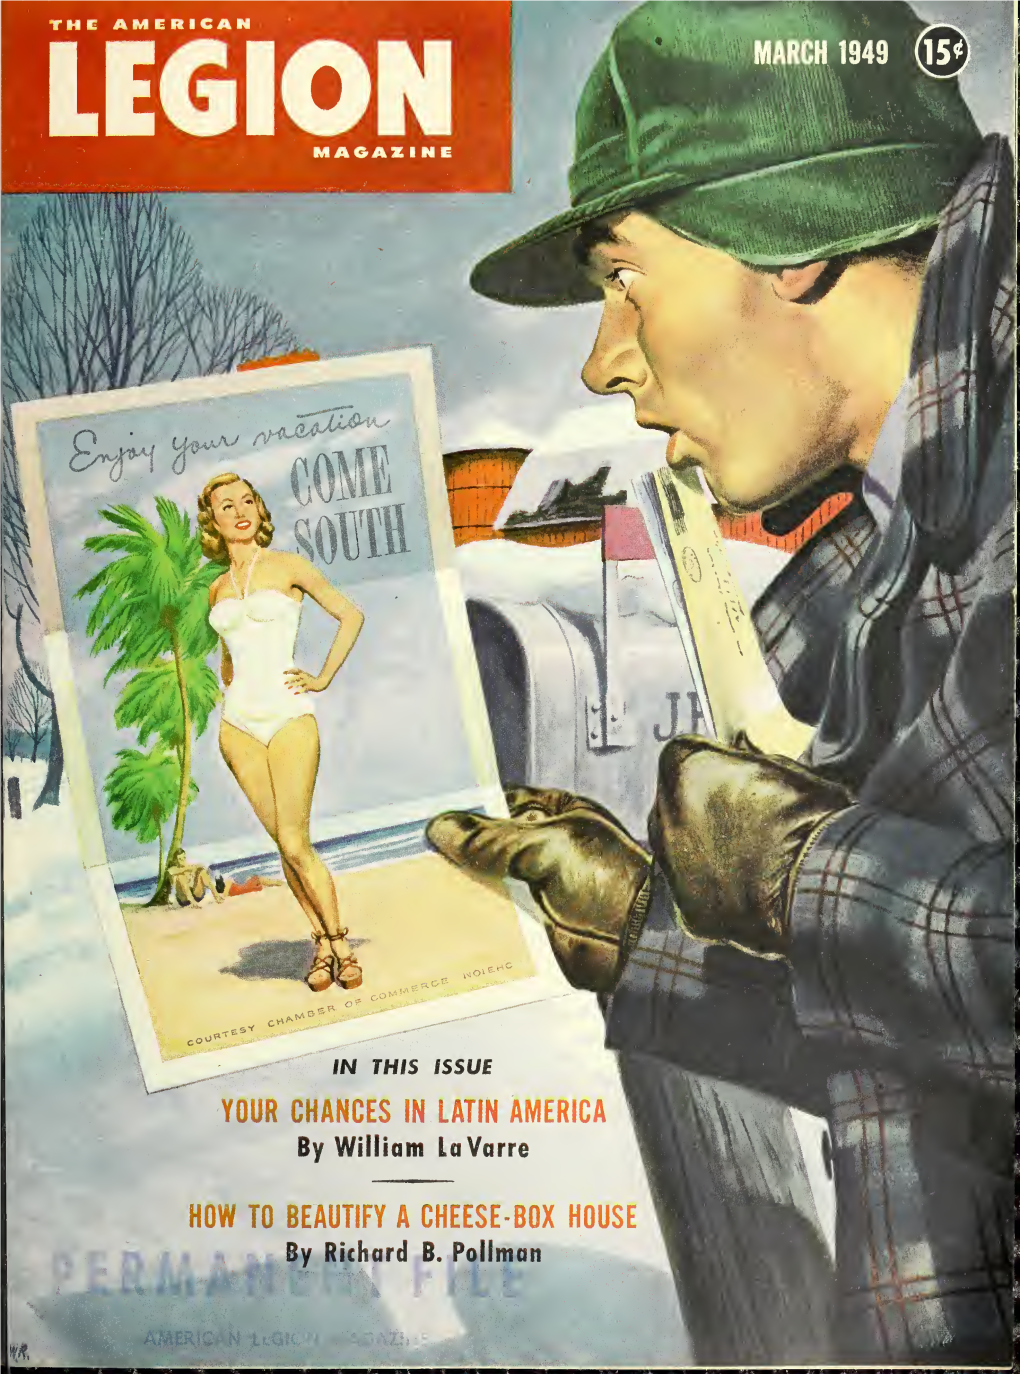 The American Legion Magazine [Volume 46, No. 3 (March 1949)]